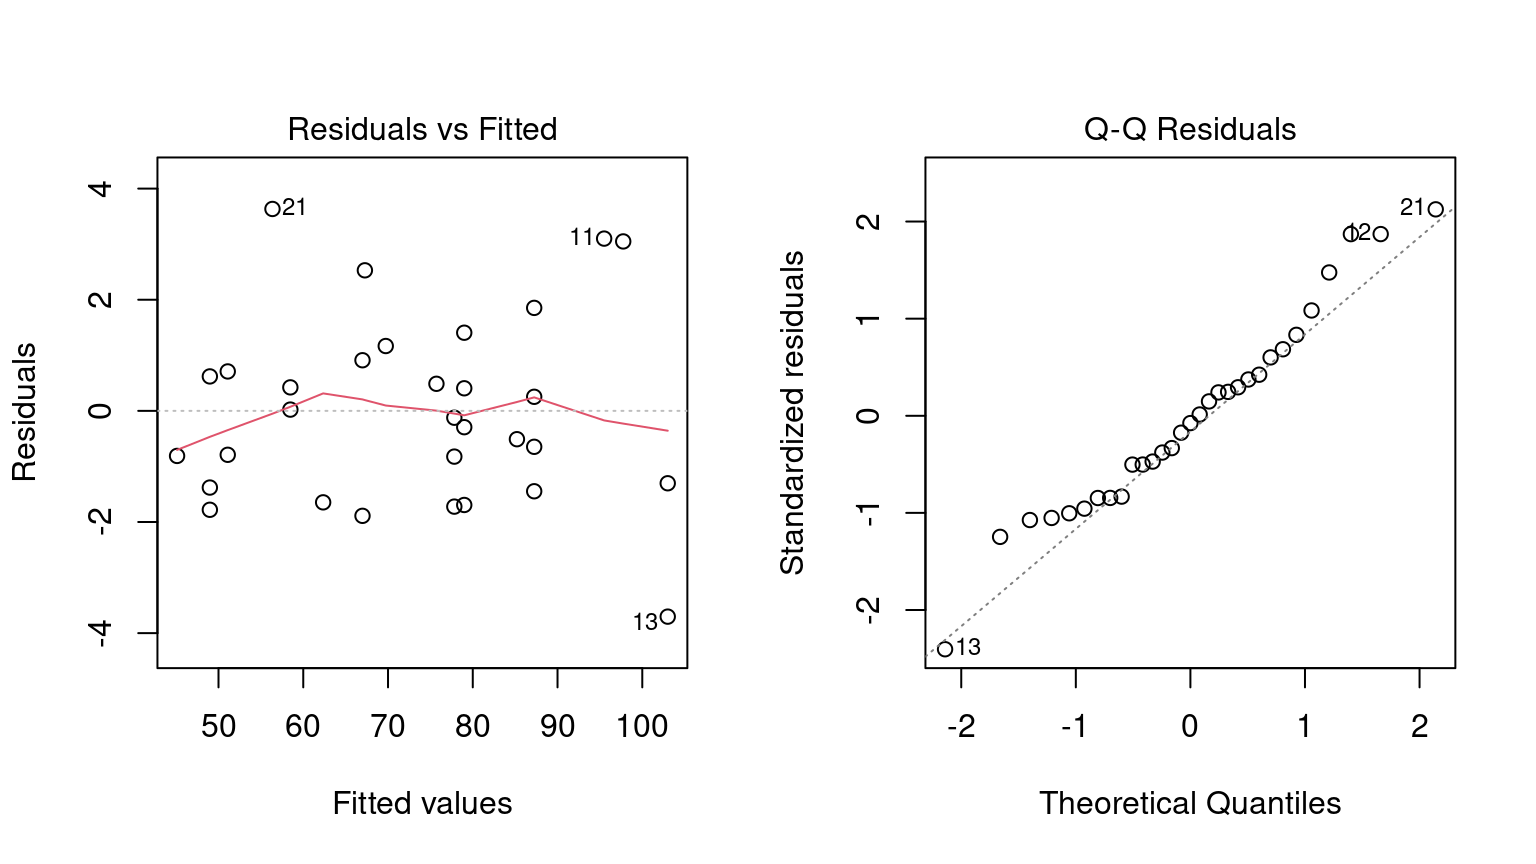 A la izquierda hay un diagrama de dispersión de los residuos del modelo versus los valores predichos. No hay tendencias fuertes en los datos. El panel de la derecha muestra un gráfico cuantil-cuantil normal donde los puntos indican que la normalidad probablemente sea una buena suposición.